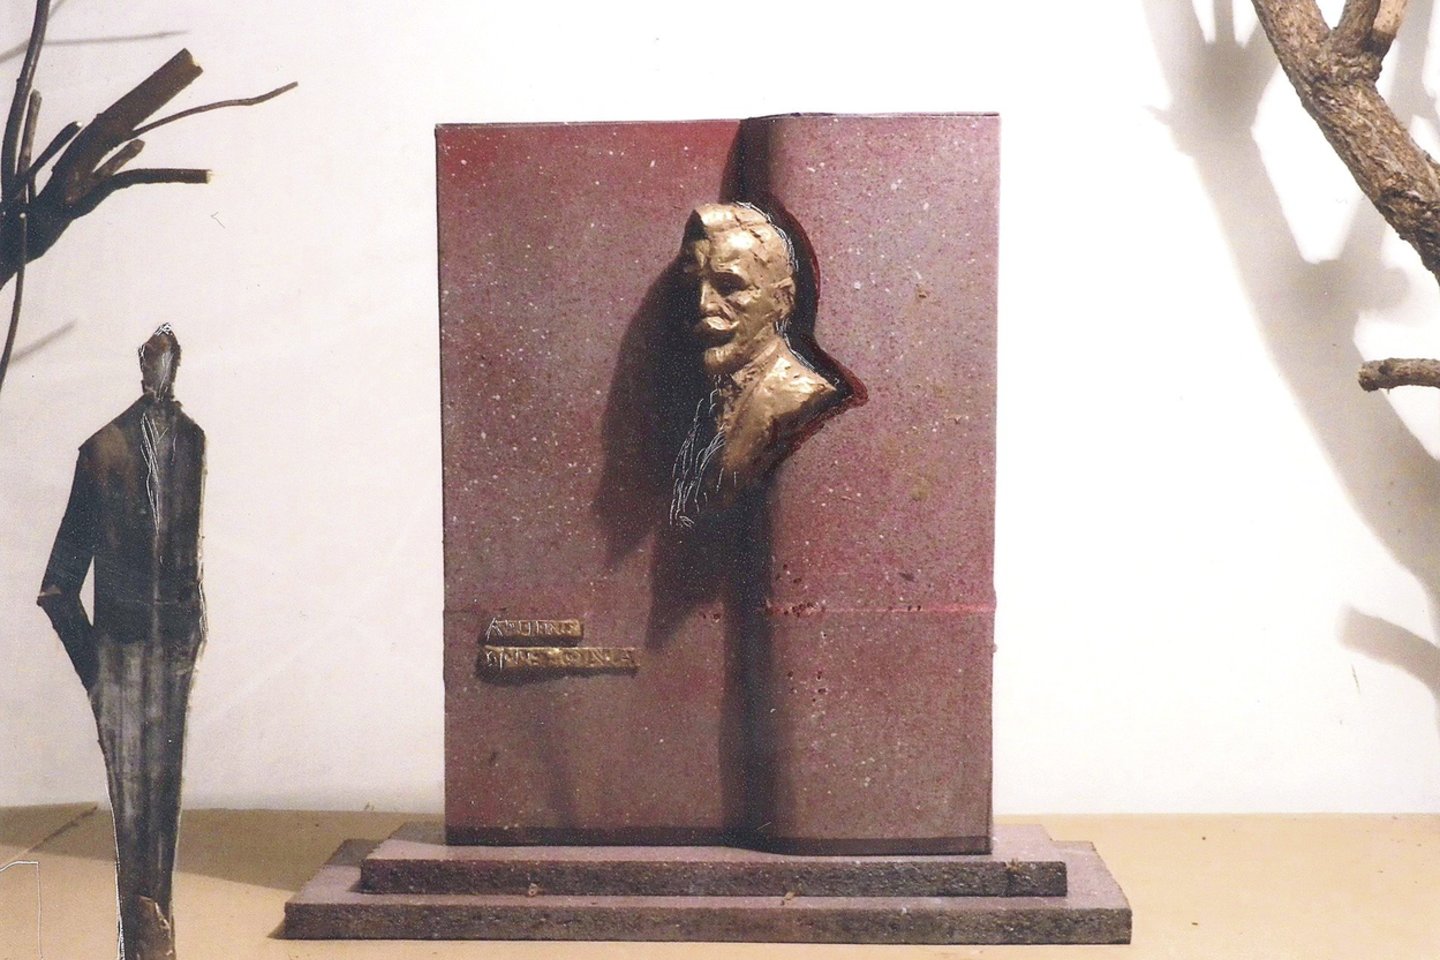 Amerikos išeivijos šauliai nesėkmingai bandė Vilniui už dyką įsiūlyti šį skulptoriaus A.Žukausko paminklą A.Smetonai. Jis būtų stovėjęs Odminių skvere.